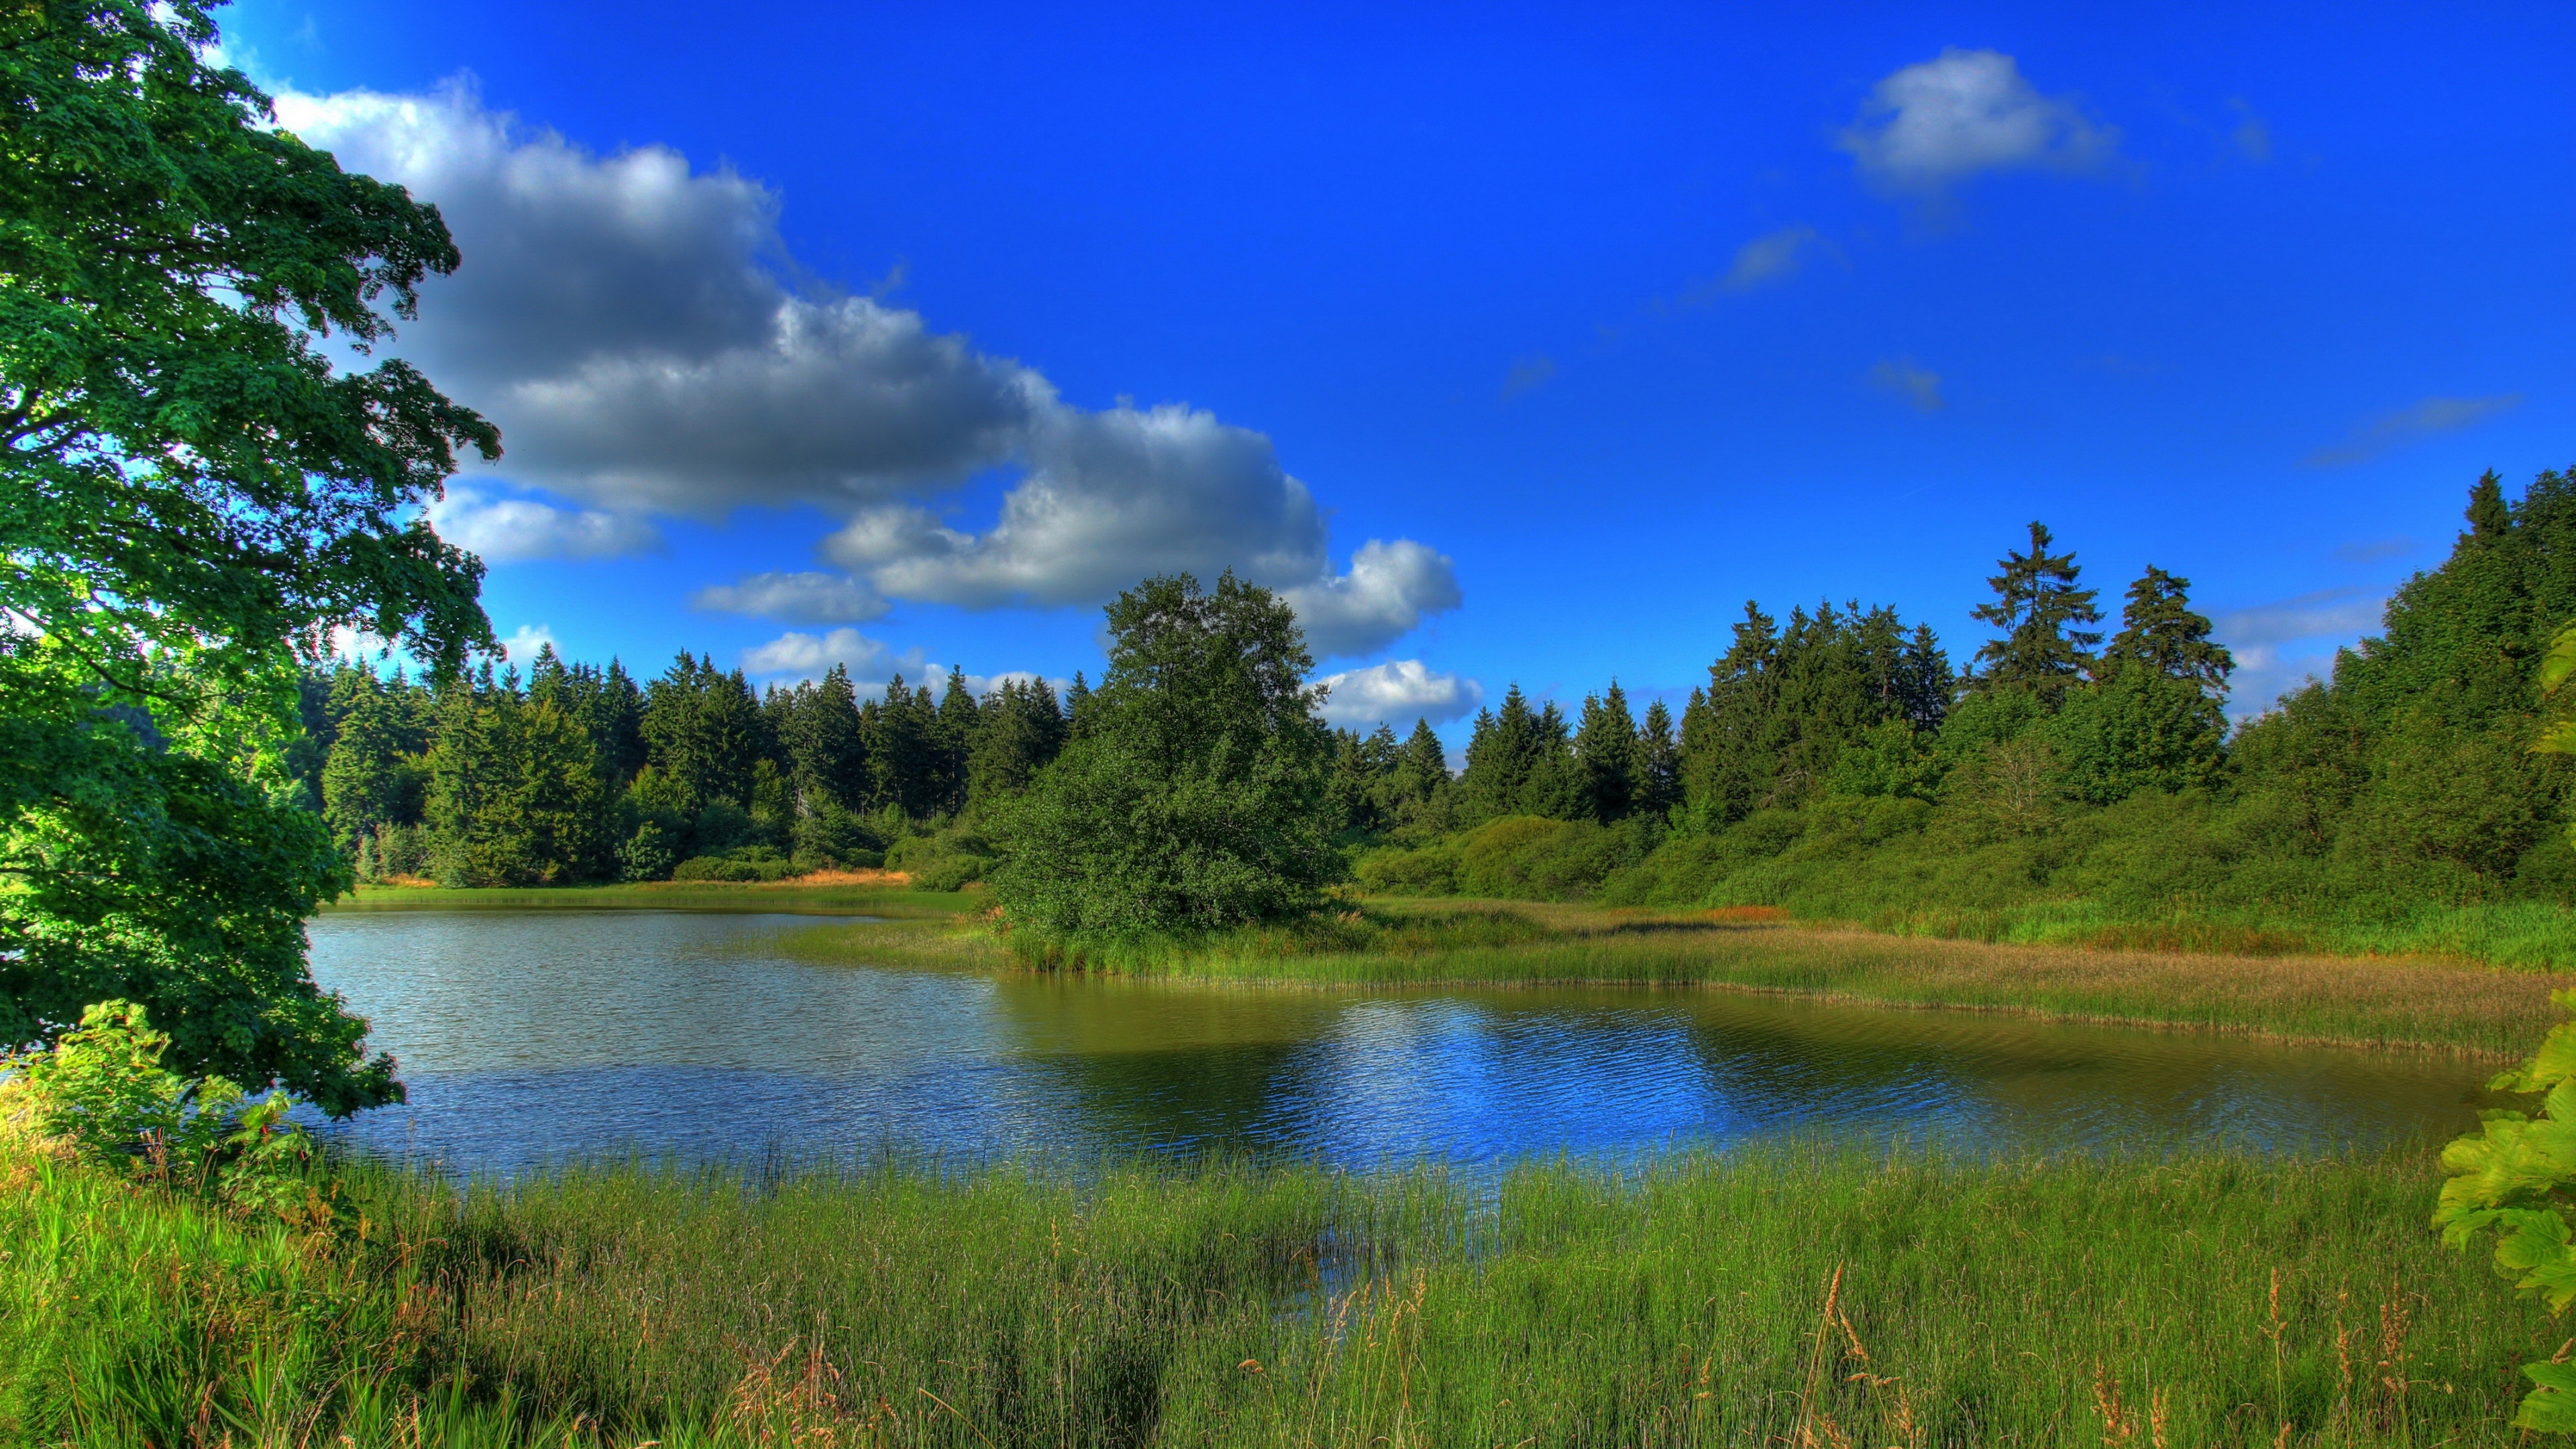 Saskatchewan River, Nature ultra HD, 8K wallpaper, Stunning visuals, 3840x2160 4K Desktop